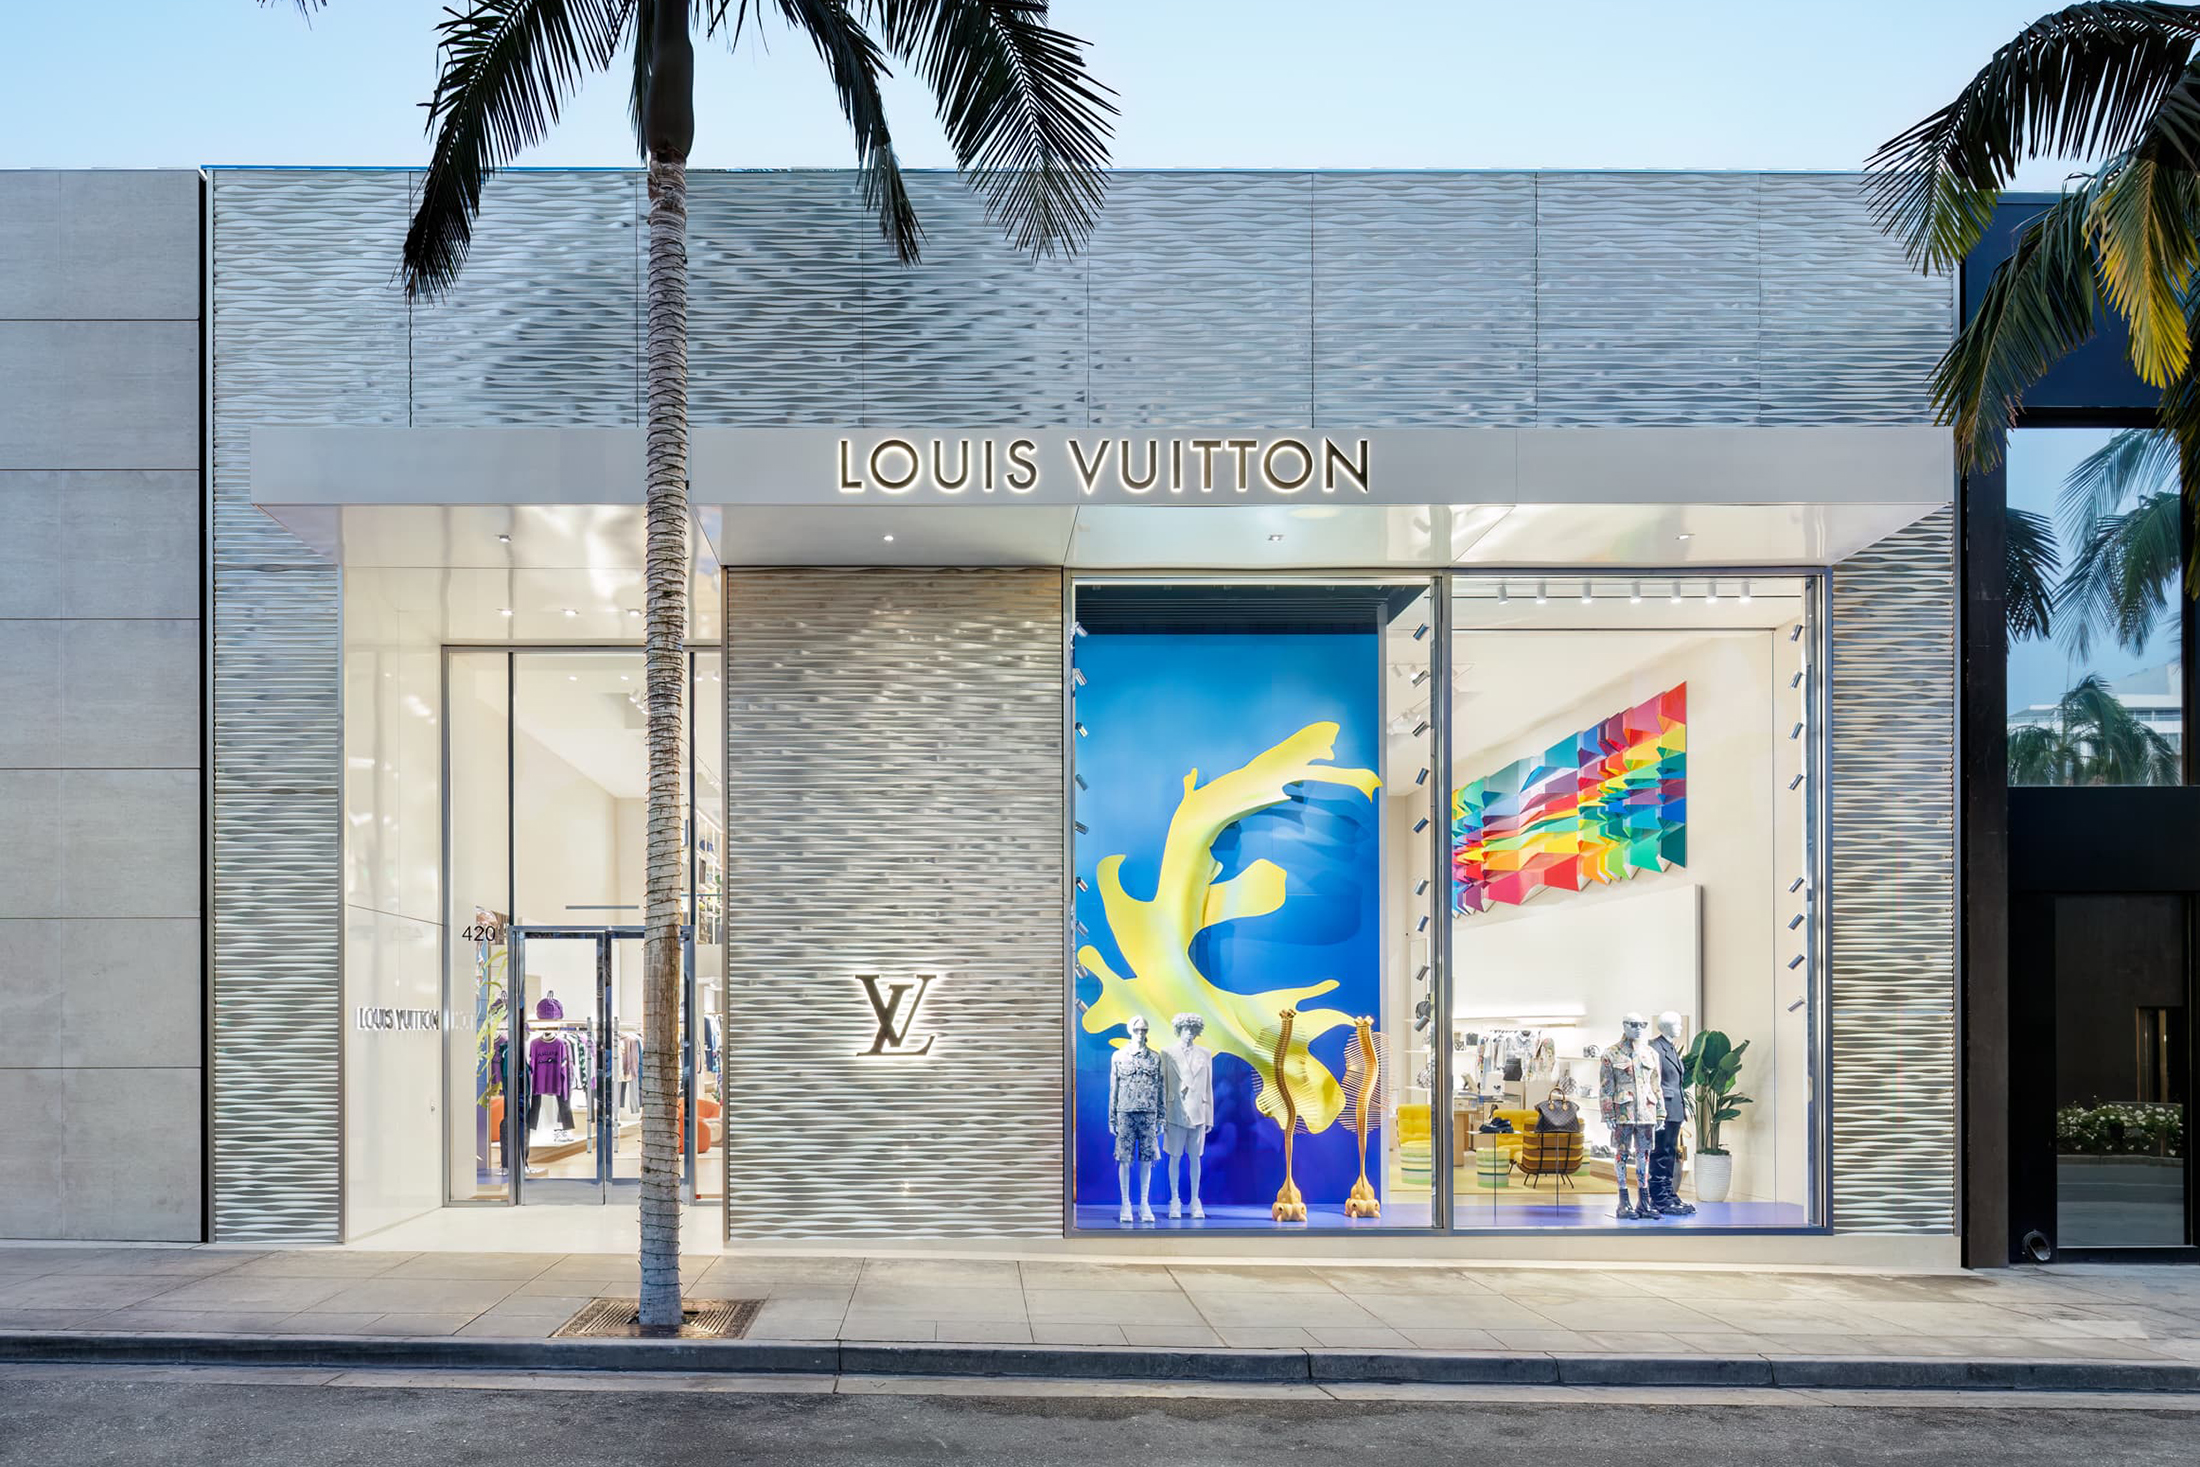 Harrods Opens New Louis Vuitton Boutique